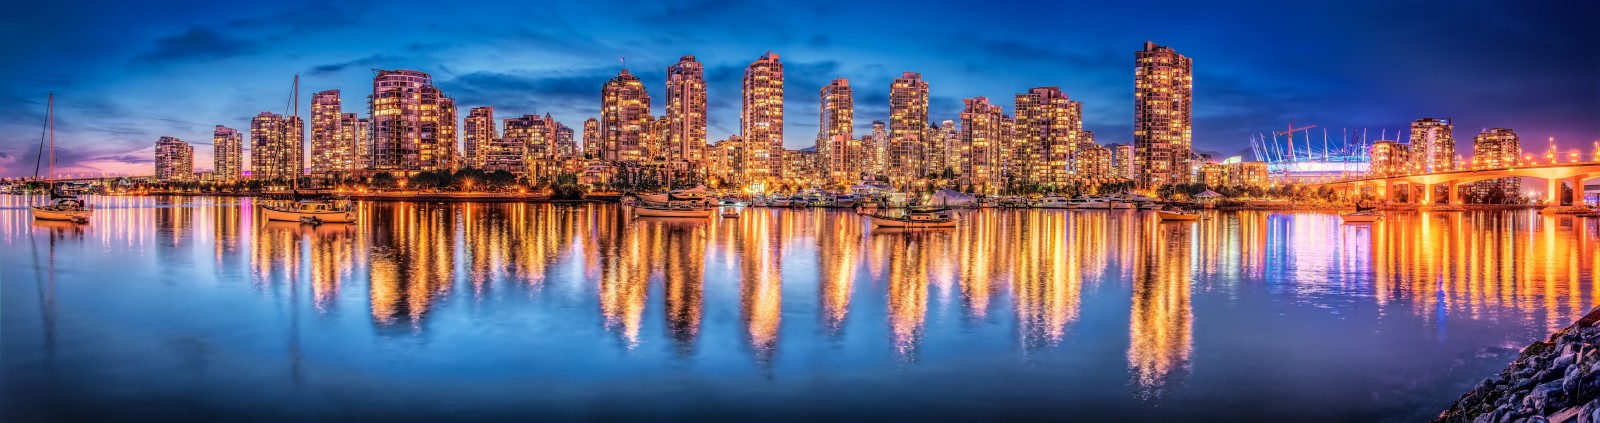 kapal pesiar, kota malam, refleksi, Kanada, panorama, bangunan, Columbia Inggris, Vancouver